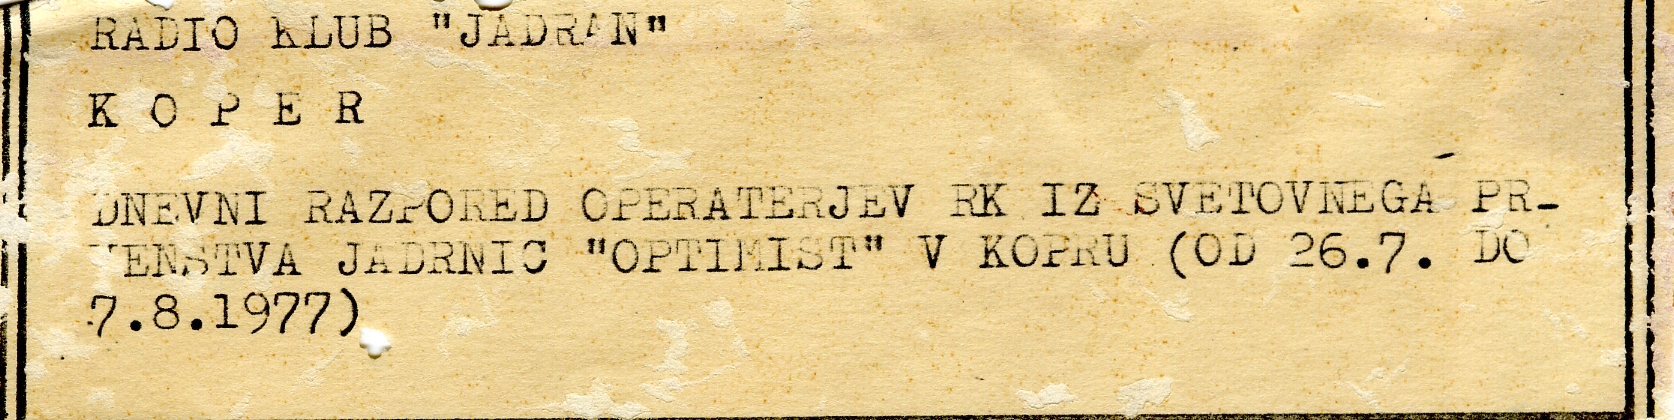 Svetovno prvenstvo jadrnic Optimist - dnevni raspored operaterjev  - 26.07/07.08.1977